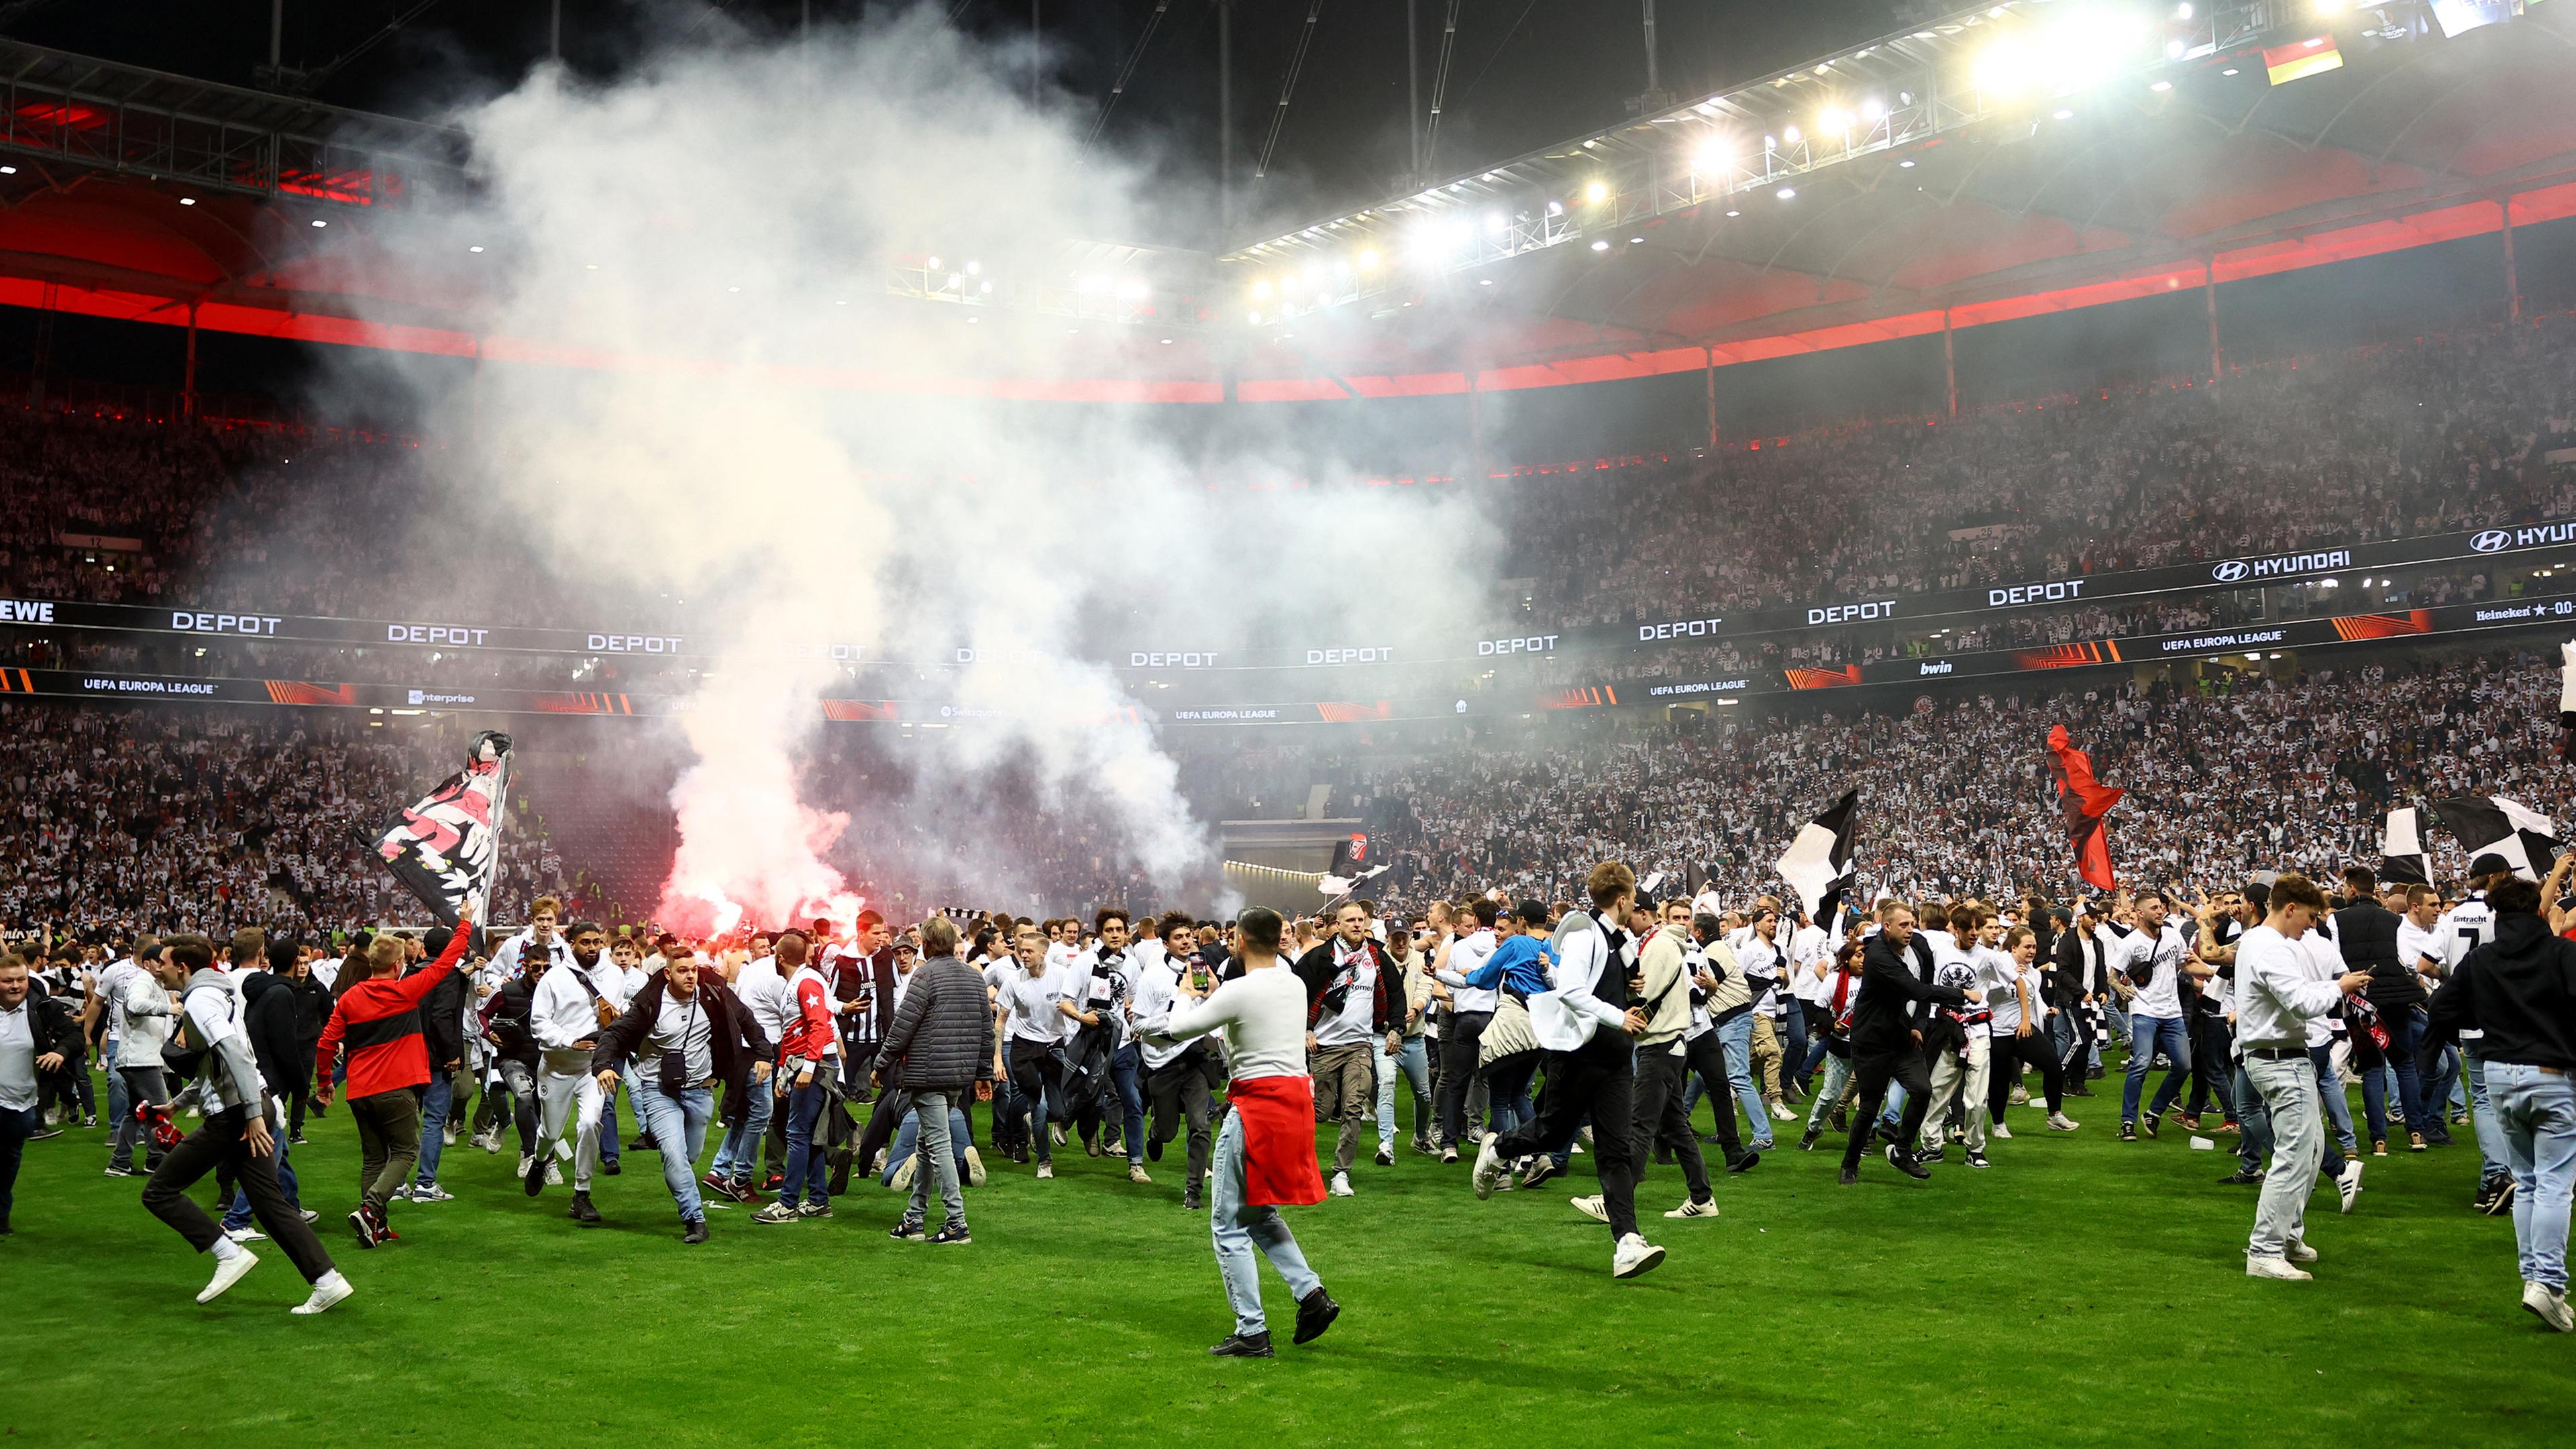 Champions League Frankfurts Festspiele auf Bewährung